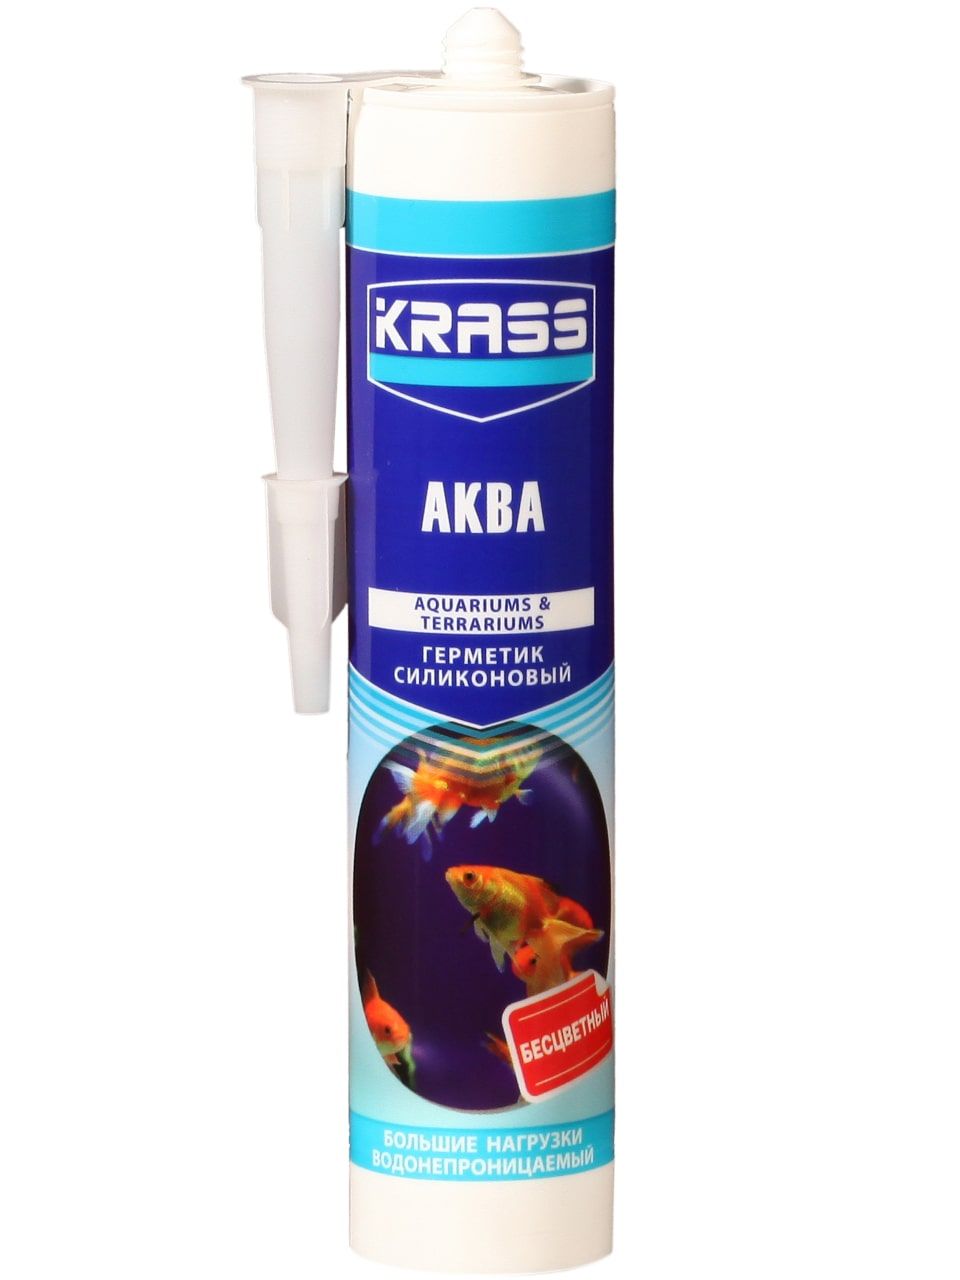 Герметик силиконовый KRASS для аквариумов (Аква)